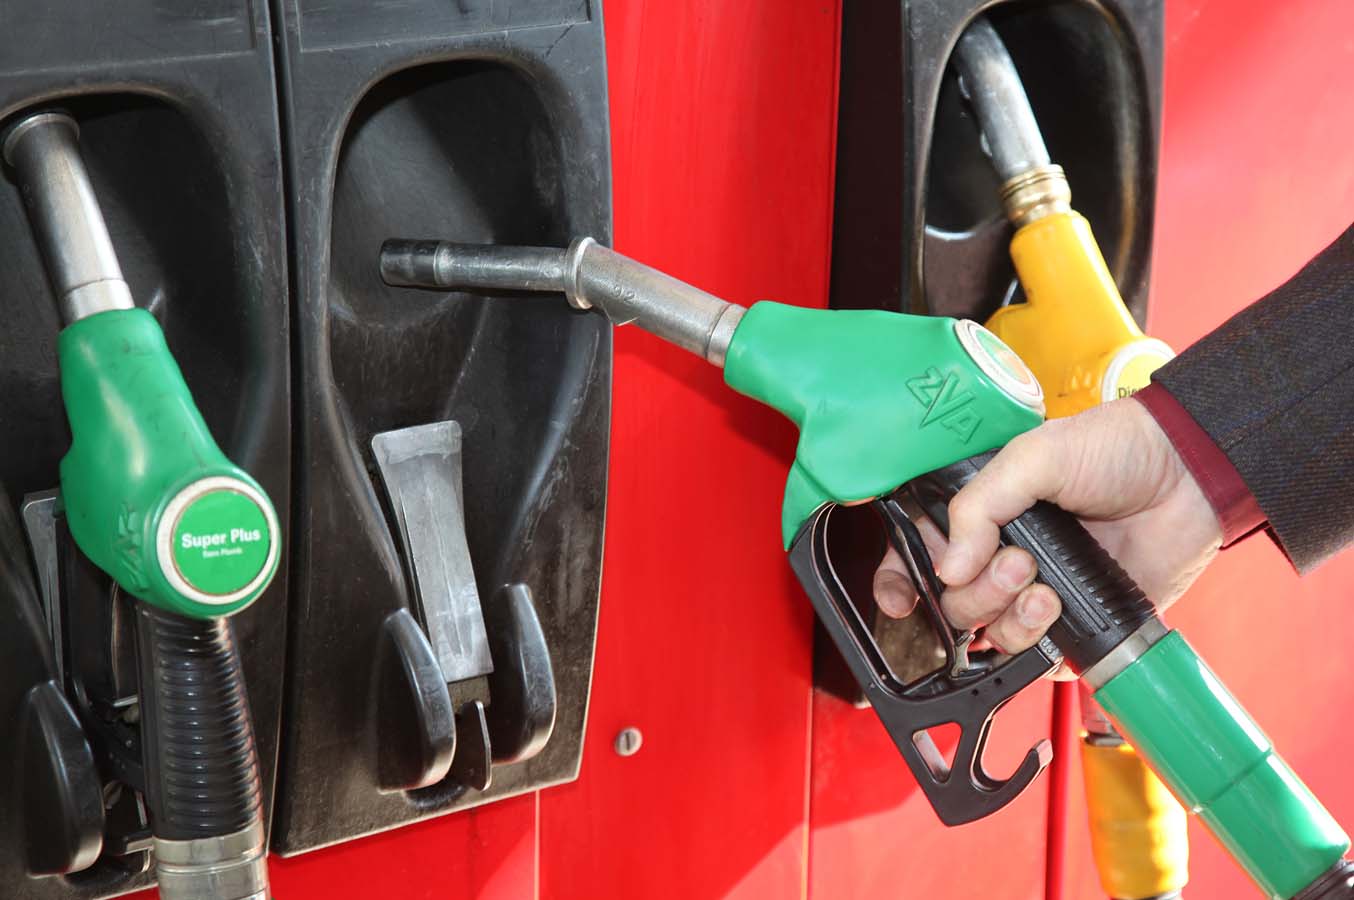     Augmentation du prix des carburants en novembre 

